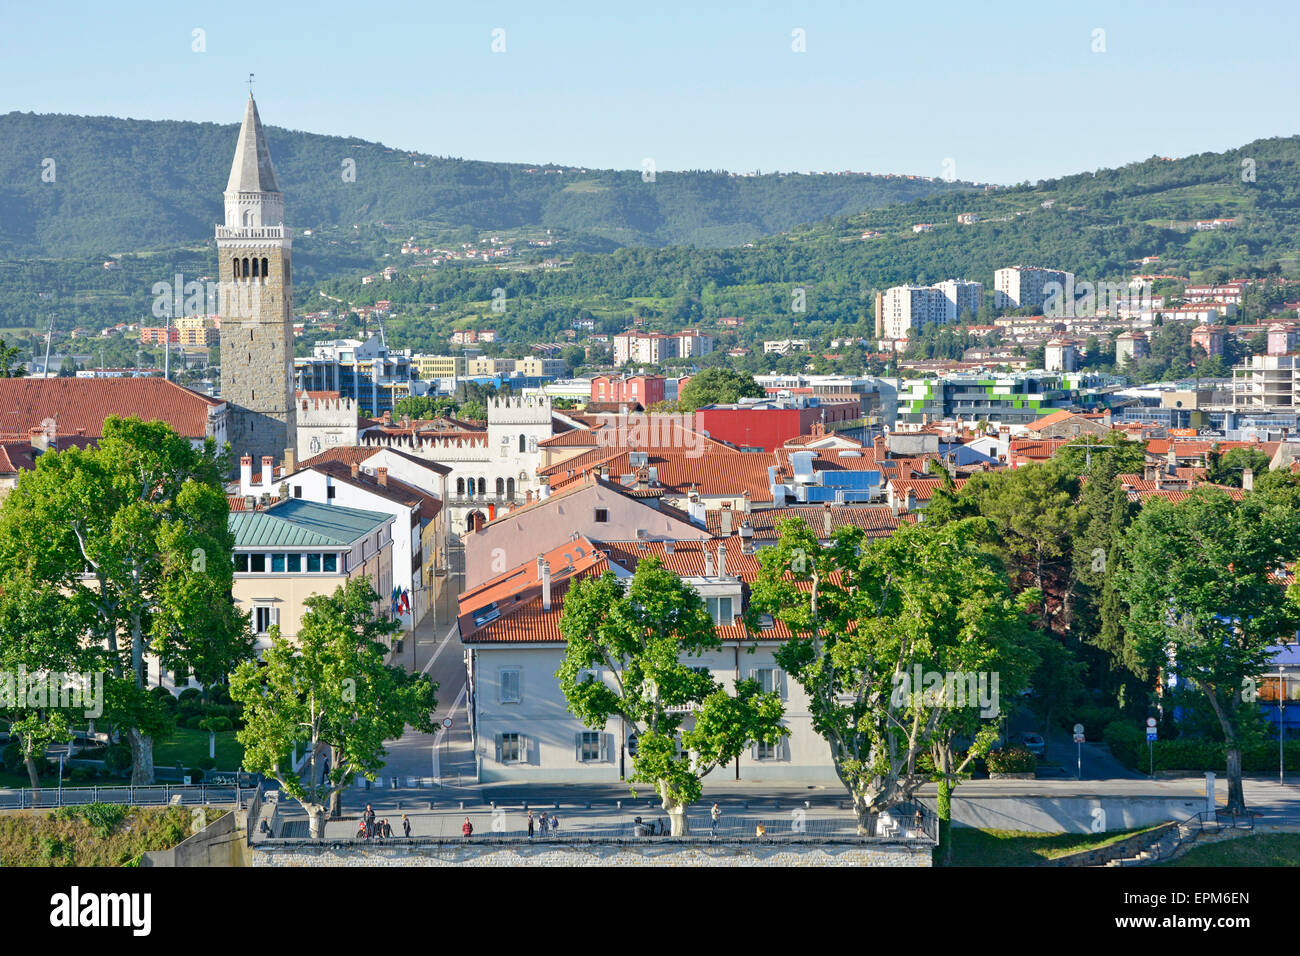 La ville de Koper avec clocher de Cathédrale de St Mary's accession s'élevant au-dessus de Tito square avec des collines au-delà de Slovénie, la péninsule d'Istrie, Banque D'Images